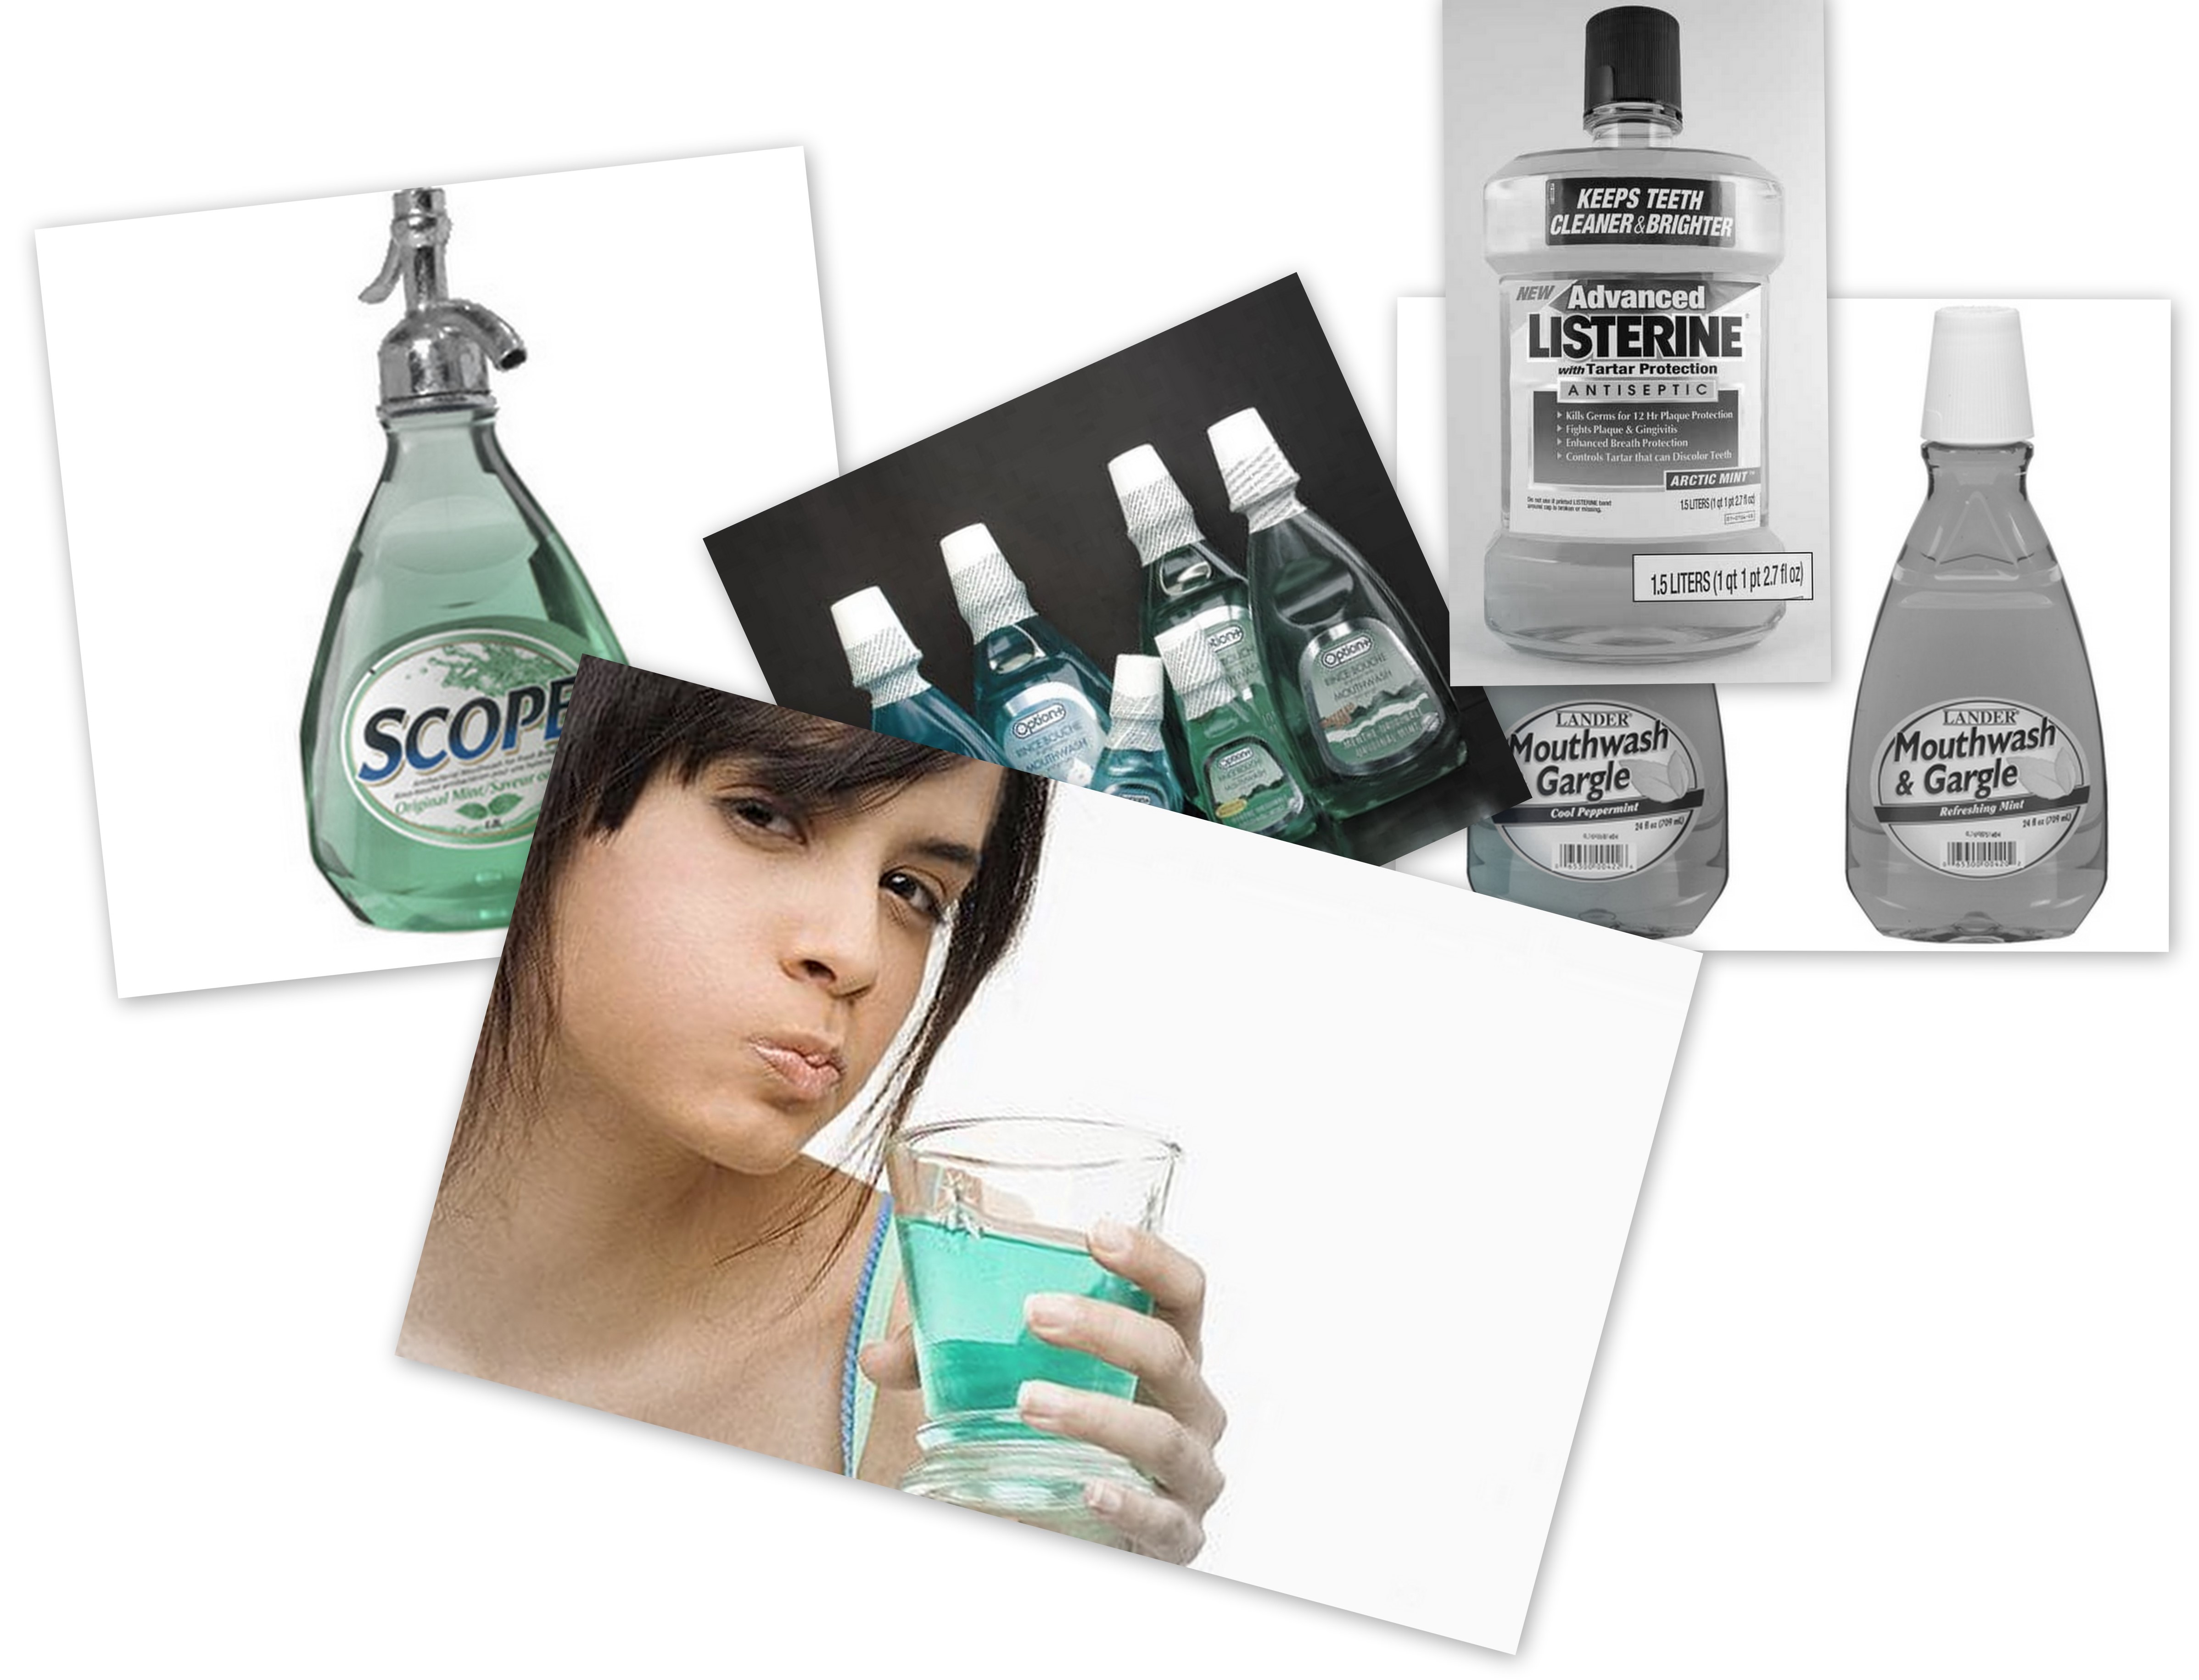 mouthwash-dangers-listerine-alcohol-liquor-cancer